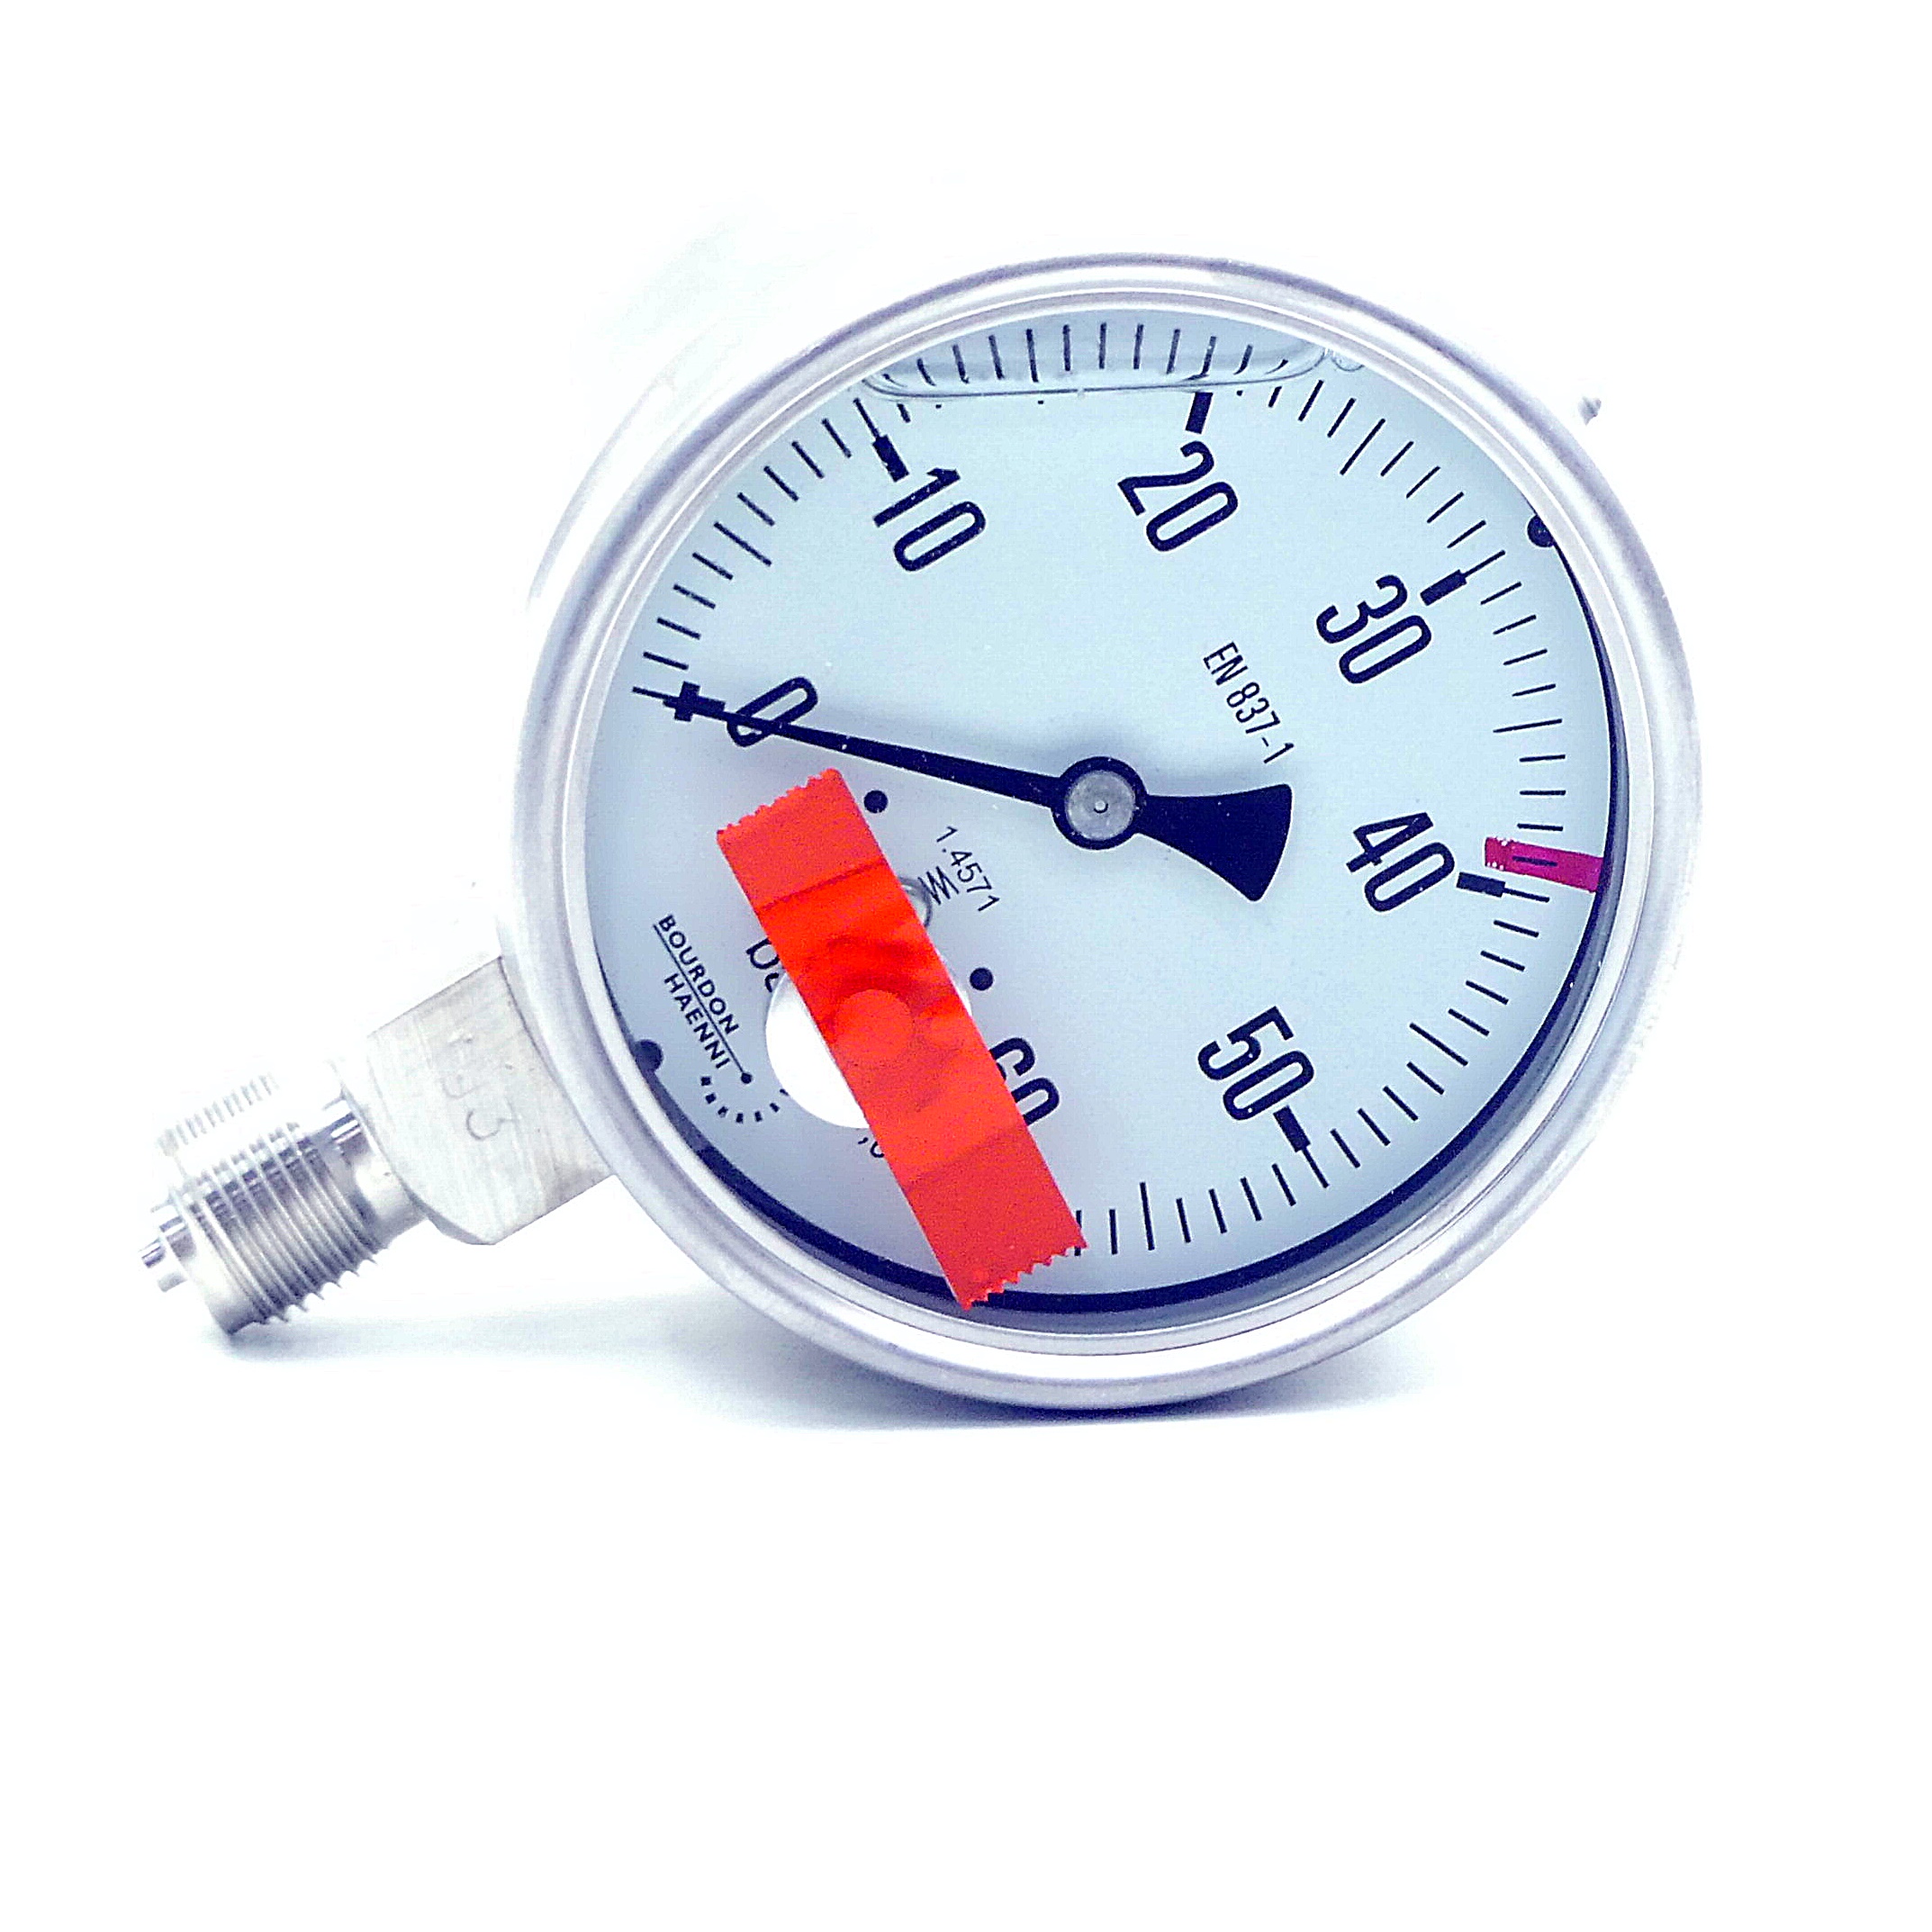 Pressure vacuum gauge 